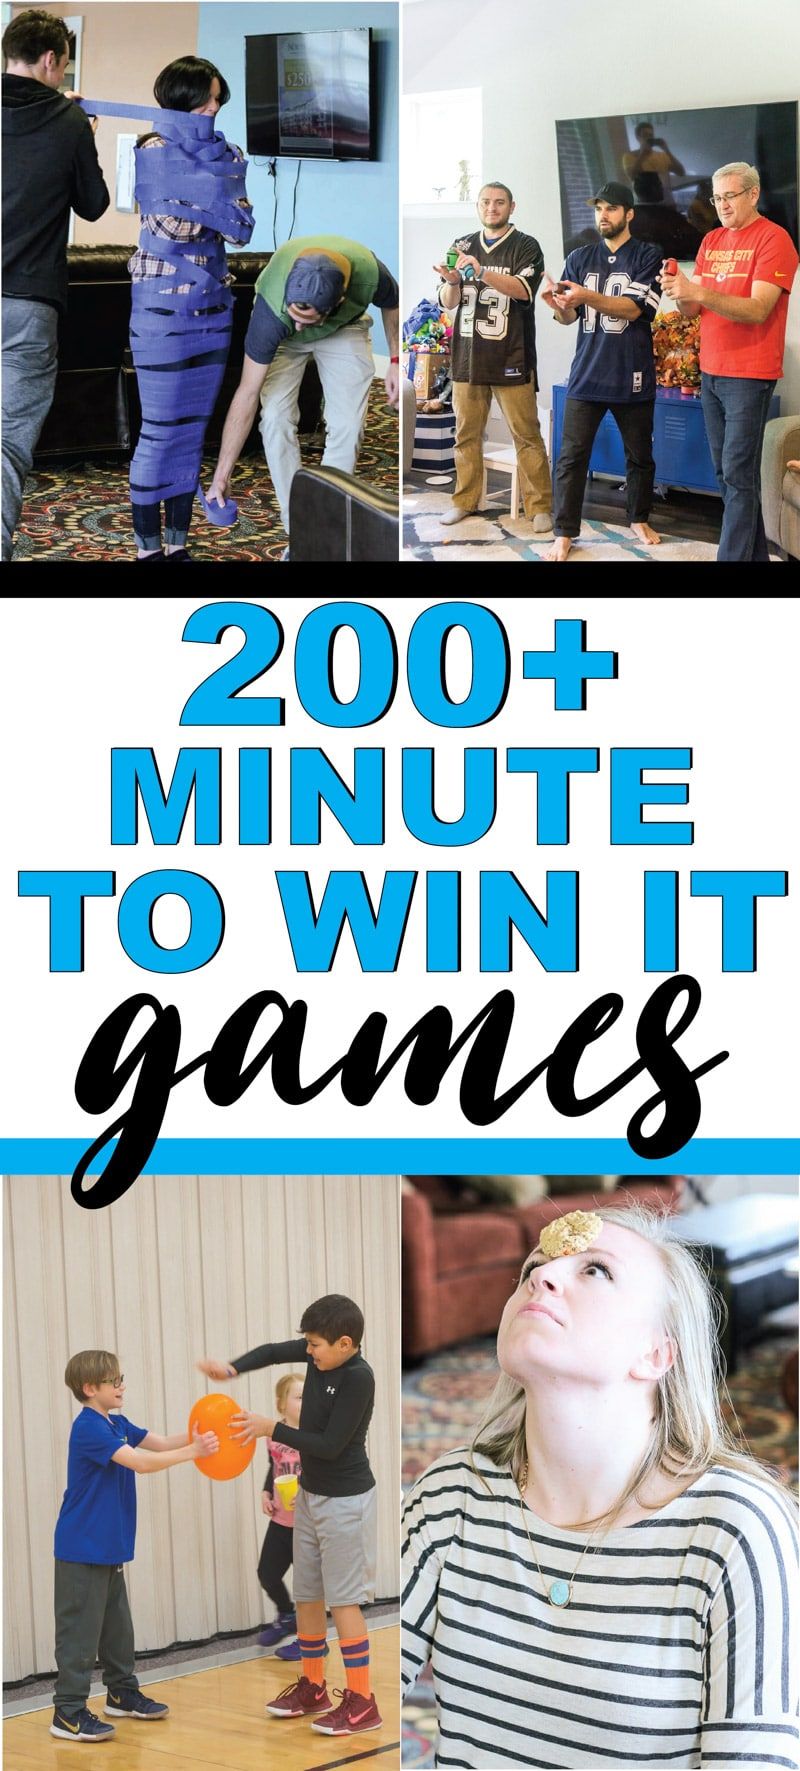 De beste minuut om IT-games voor kinderen, tieners of zelfs voor volwassenen te winnen! Meer dan 200 leuke spellen die perfect zijn voor een familiereünie, voor school, voor schoolfeesten en meer! Gemakkelijke spellen, leuke teamspellen en meer!